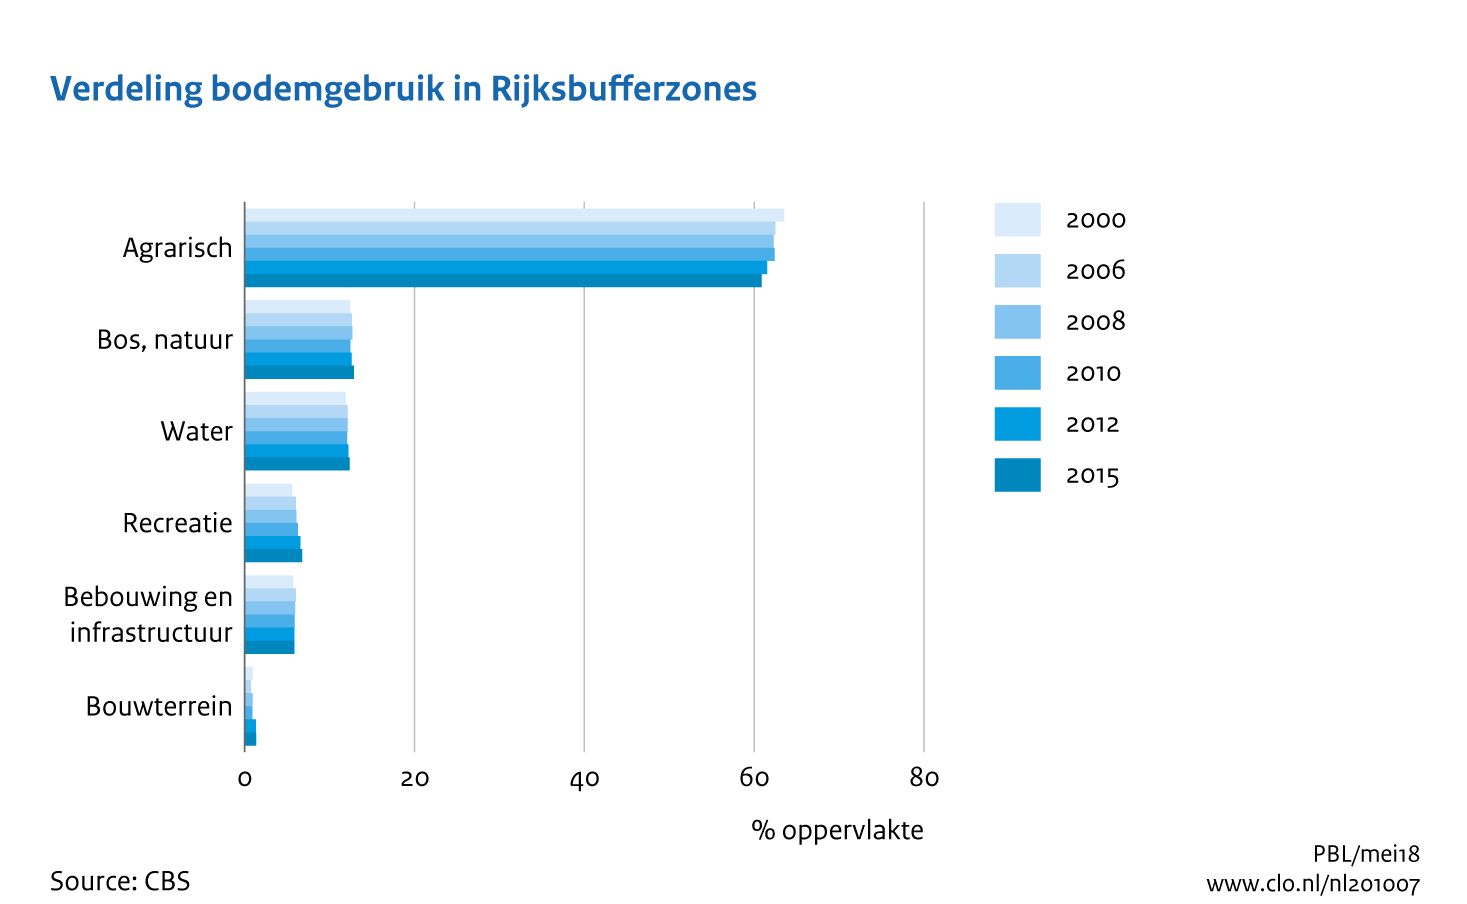 Figuur Verdeling bodemgebruik in Rijksbufferzones, 2000-2015. In de rest van de tekst wordt deze figuur uitgebreider uitgelegd.